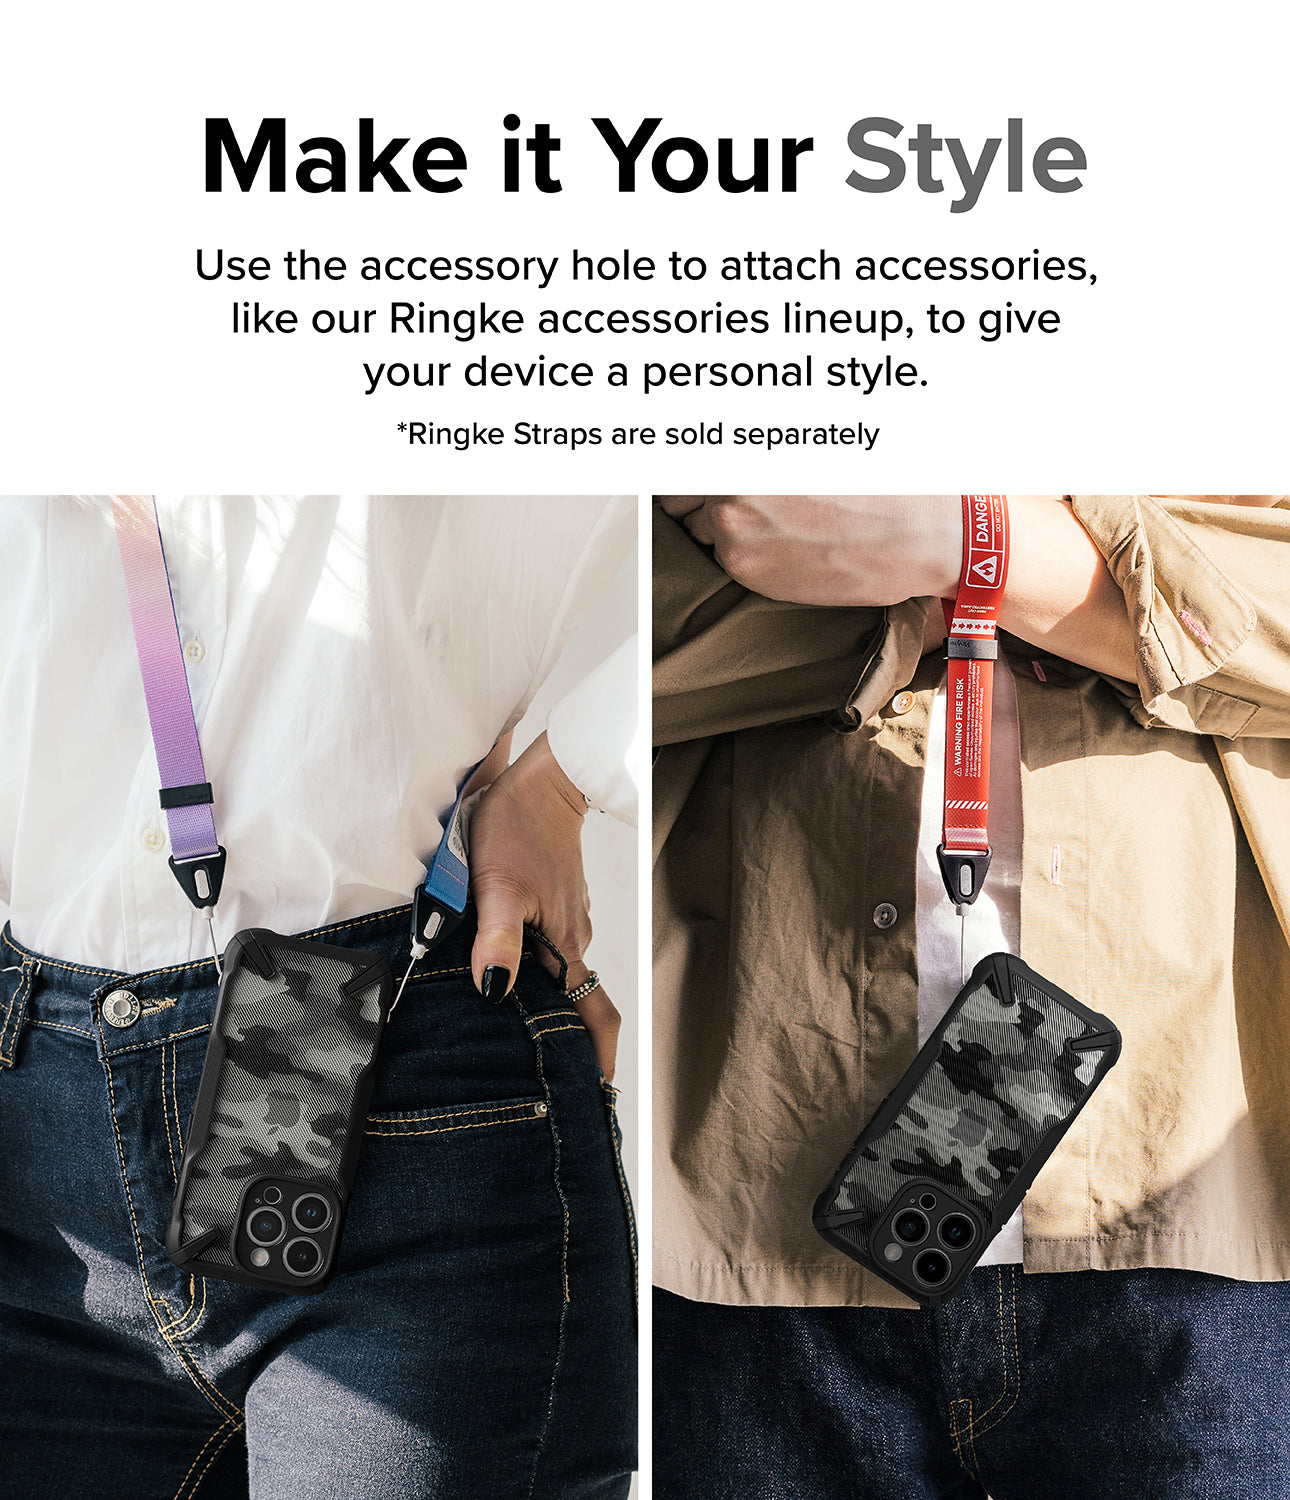 Ốp lưng iPhone 15 Pro Max | Fusion-X Camo Black - Tạo nên phong cách của bạn. Sử dụng lỗ phụ kiện để gắn các phụ kiện, chẳng hạn như dòng phụ kiện Ringke của chúng tôi, nhằm tạo phong cách cá nhân cho thiết bị của bạn.